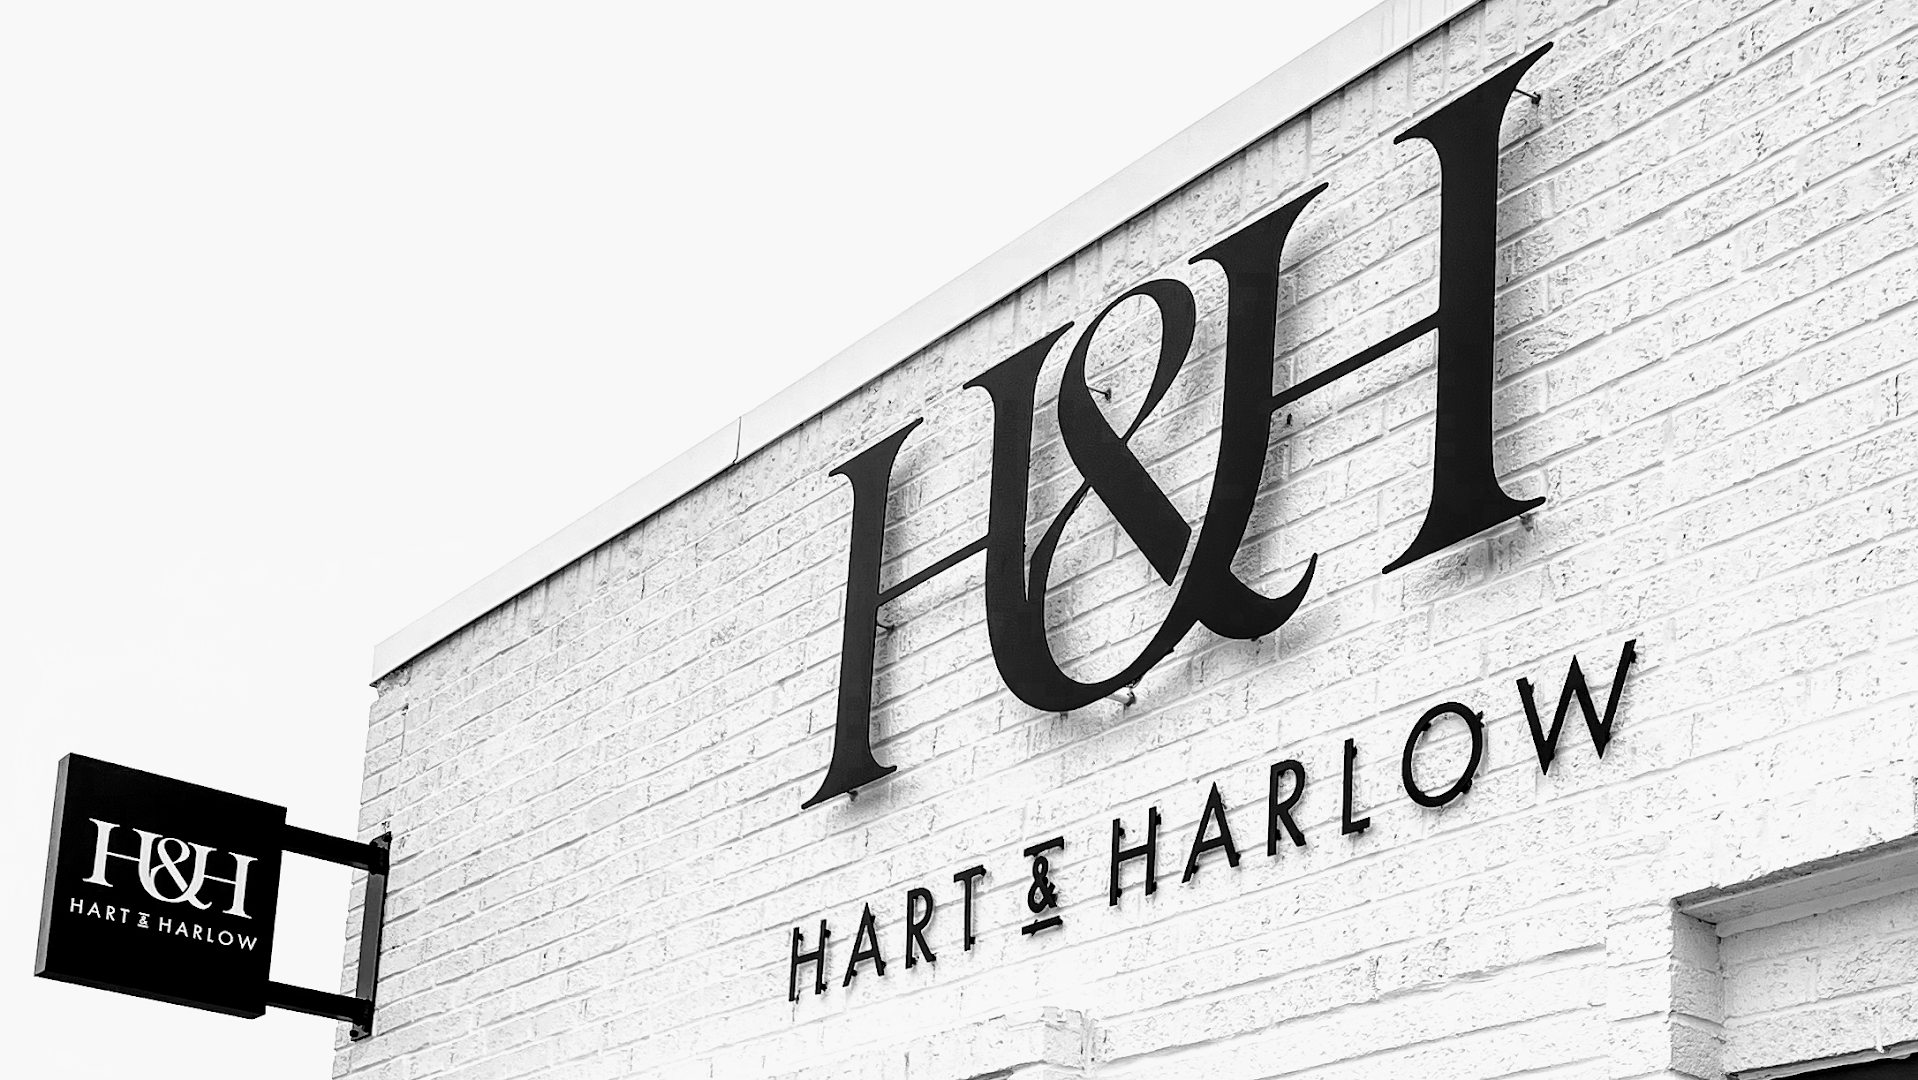 Hart & Harlow Salon